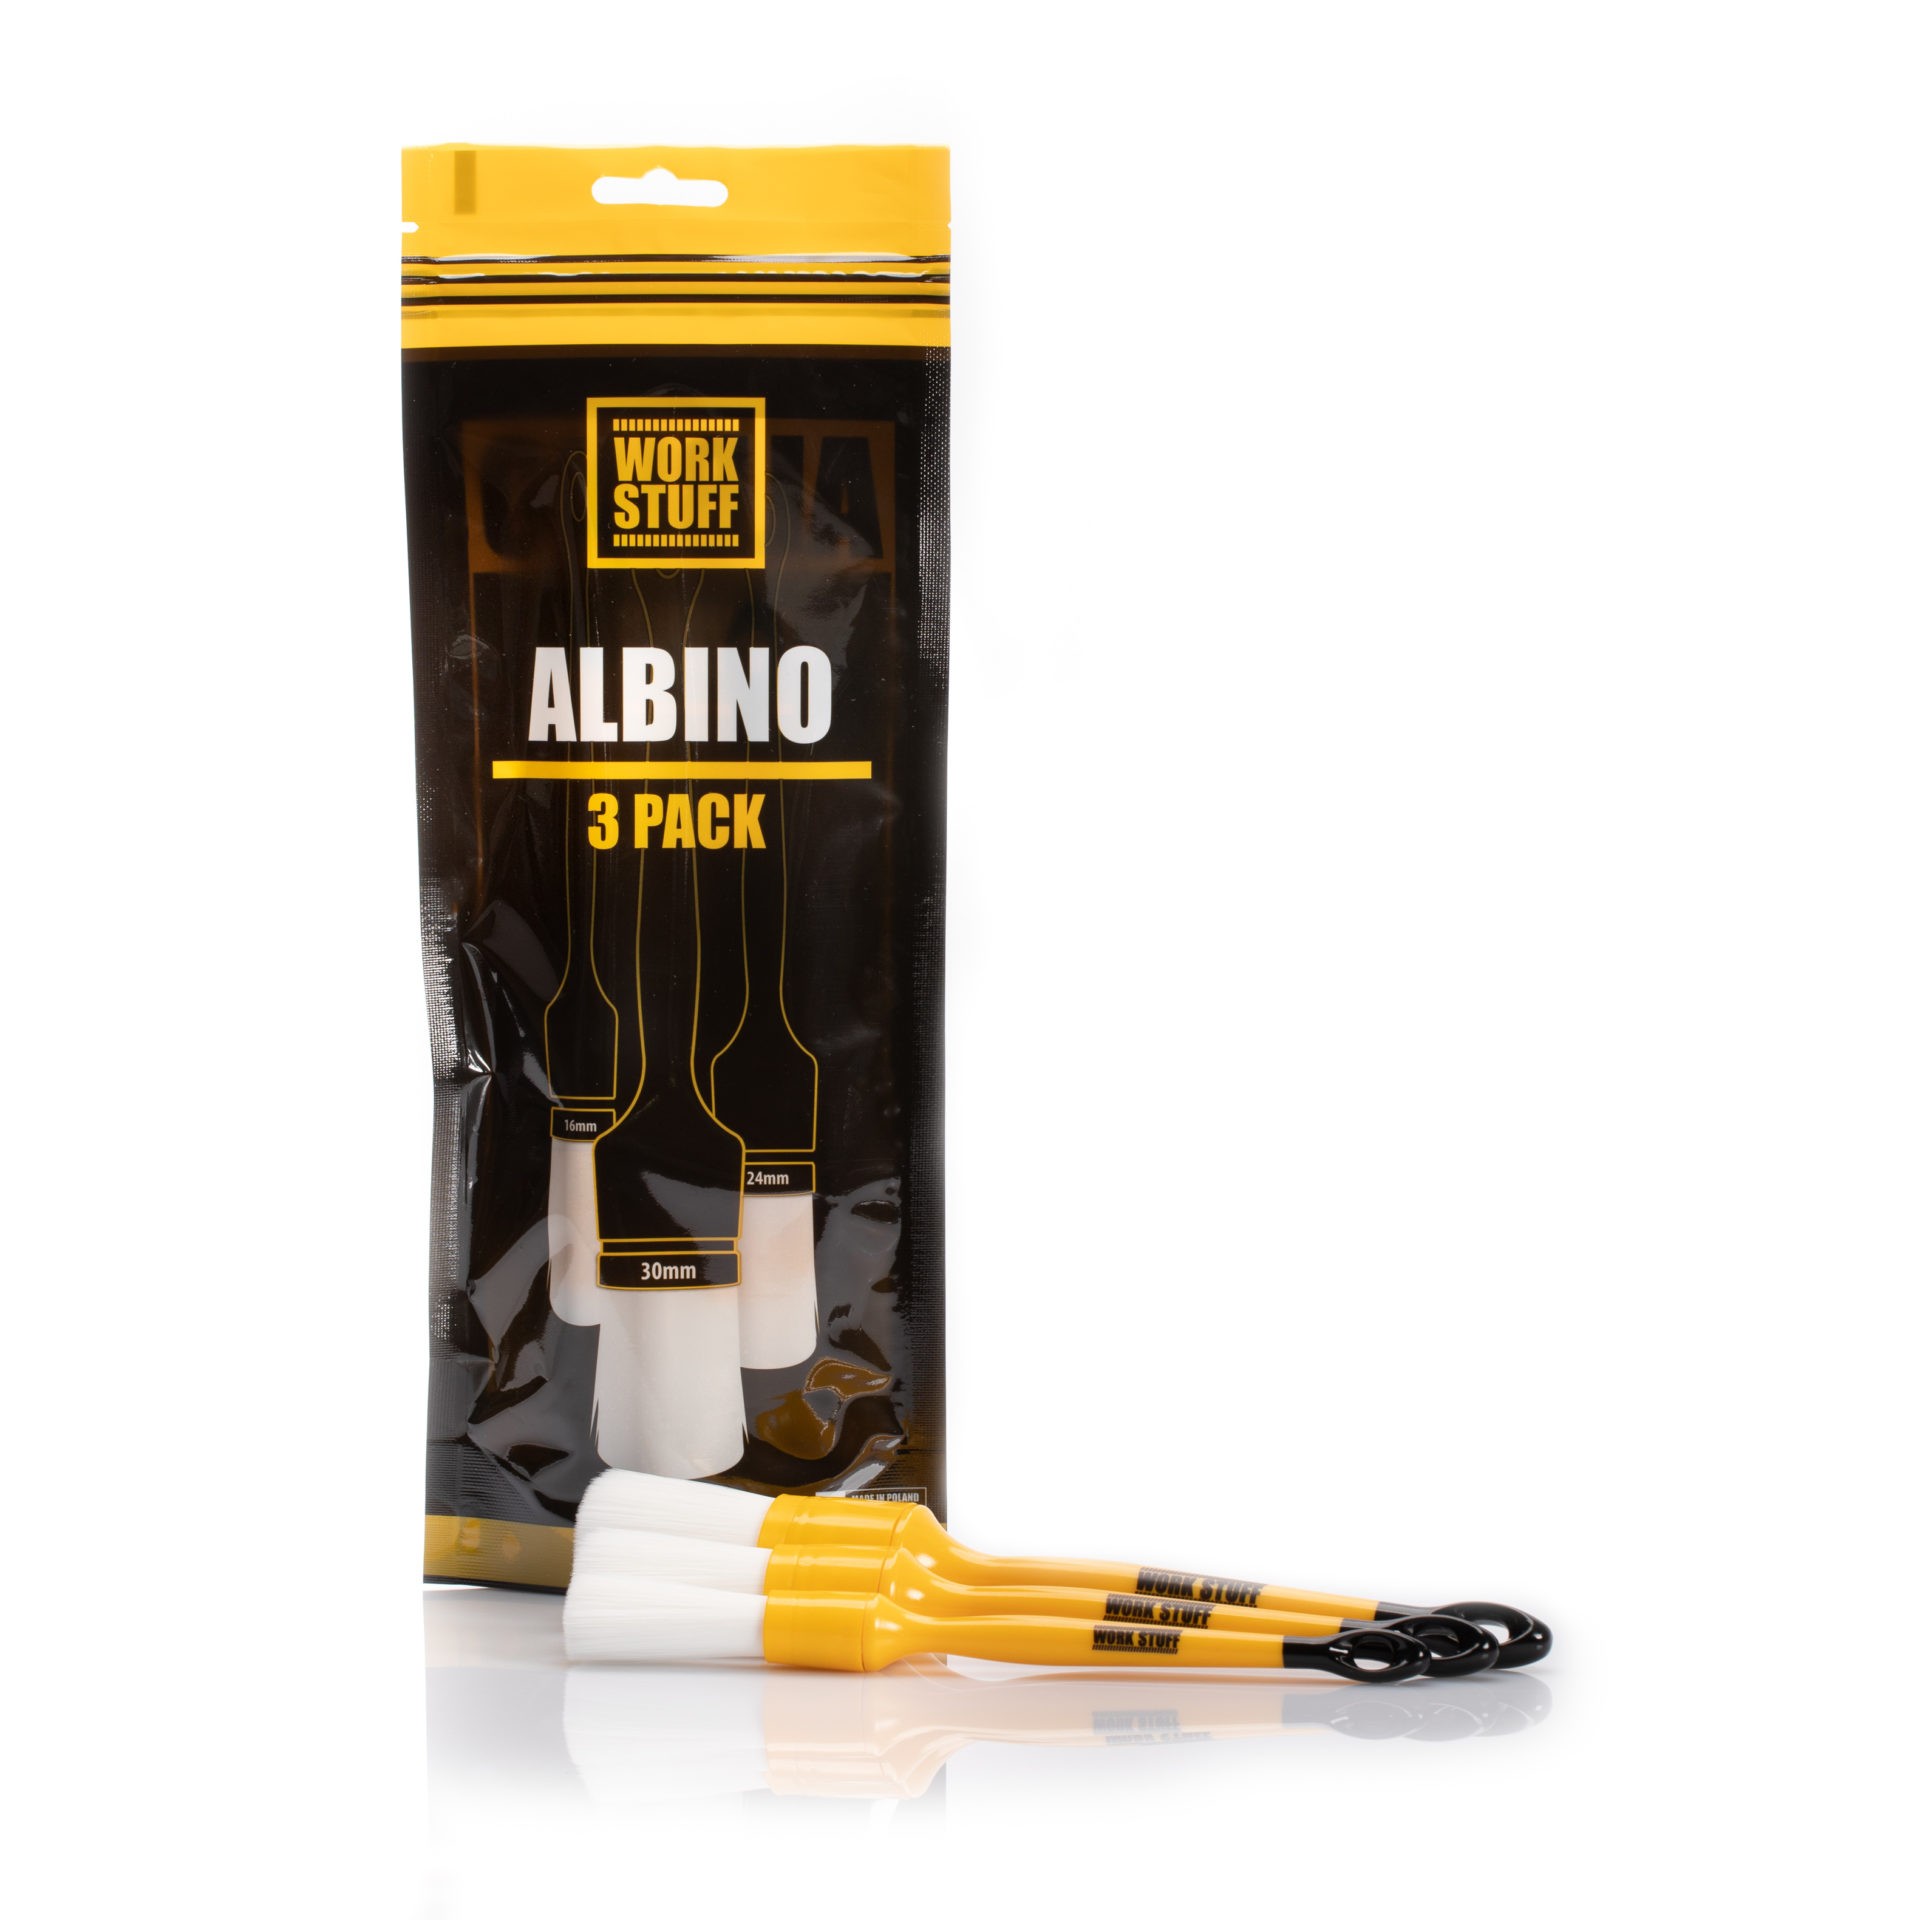 Detailing Brush ALBINO 3-pack